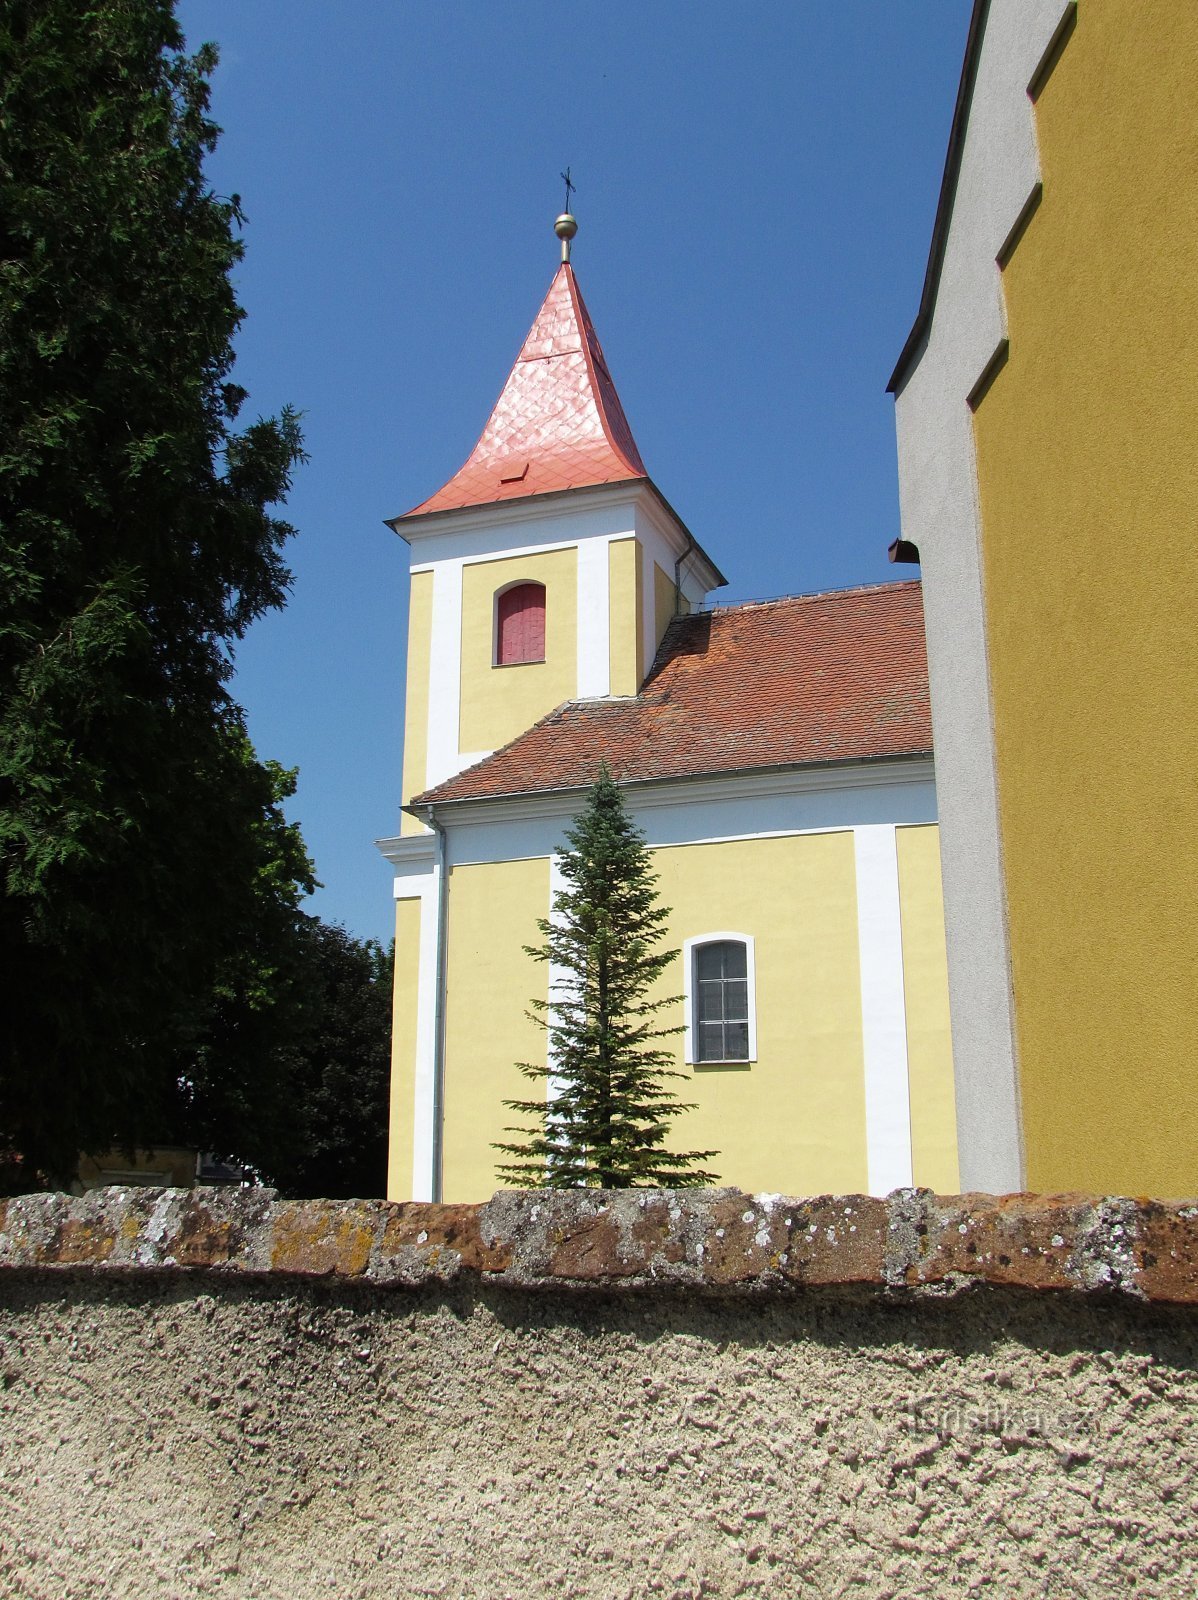 Tovačovský kerk van St. George